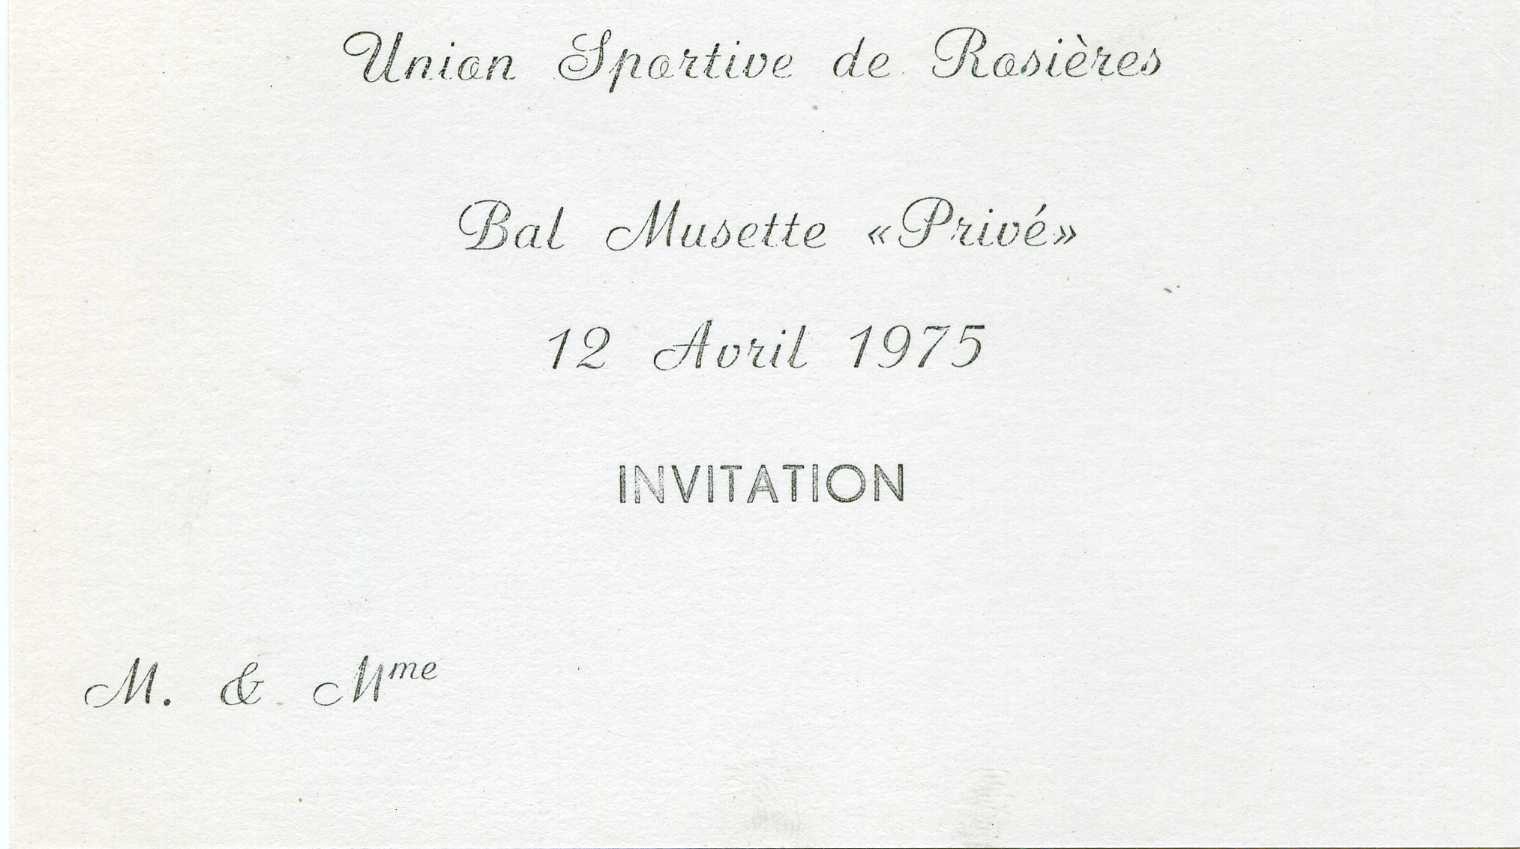 Invitation Bal Musette du 12 Avril 1975